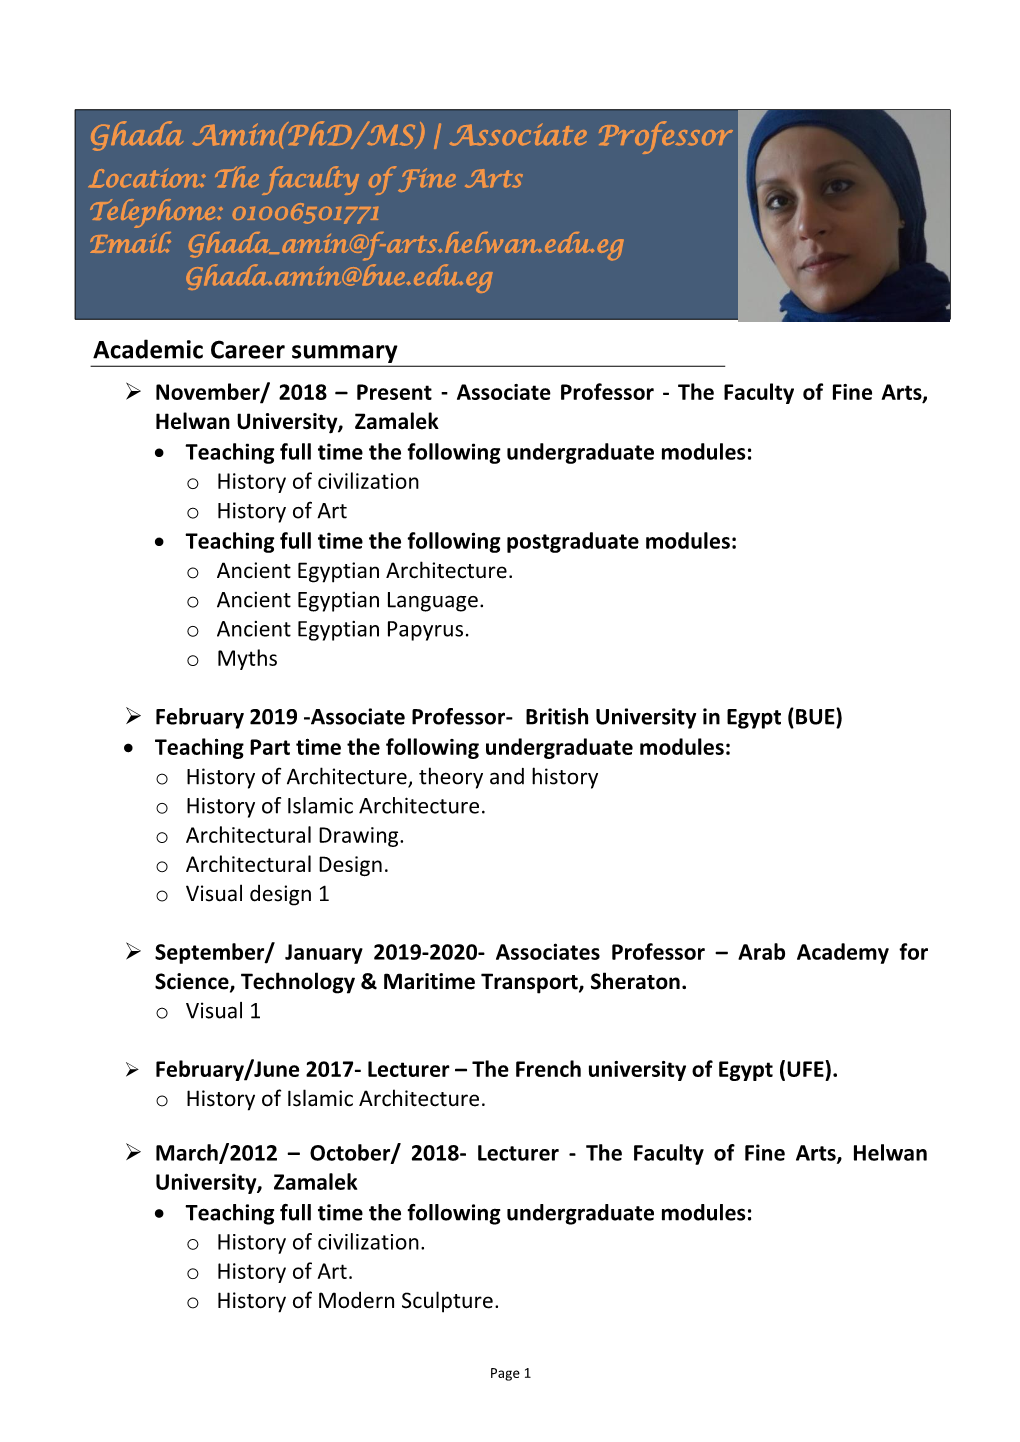 Academic Career Summary Ghada Amin(Phd/MS) | Associate